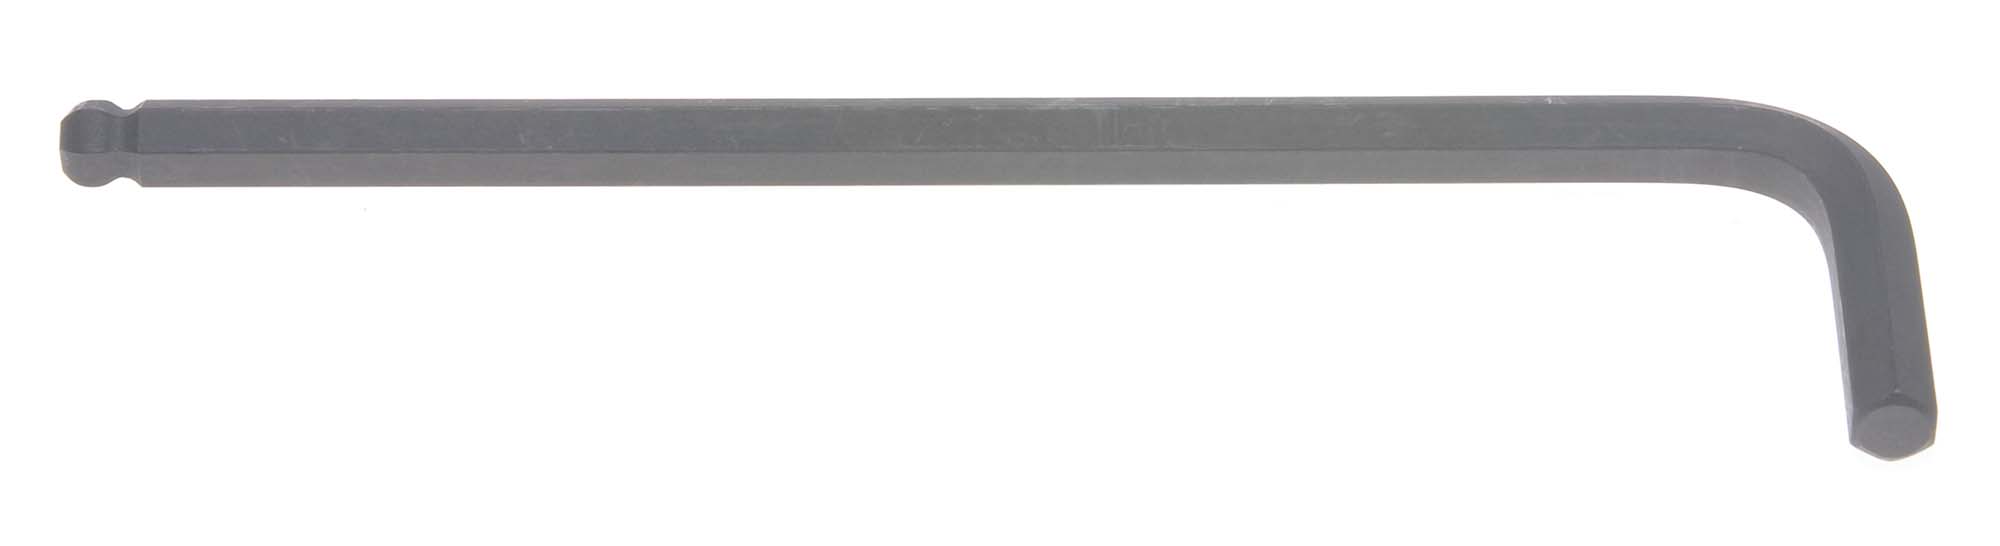 Bondhus 10984 14mm Balldriver L-Wrench Hex Key